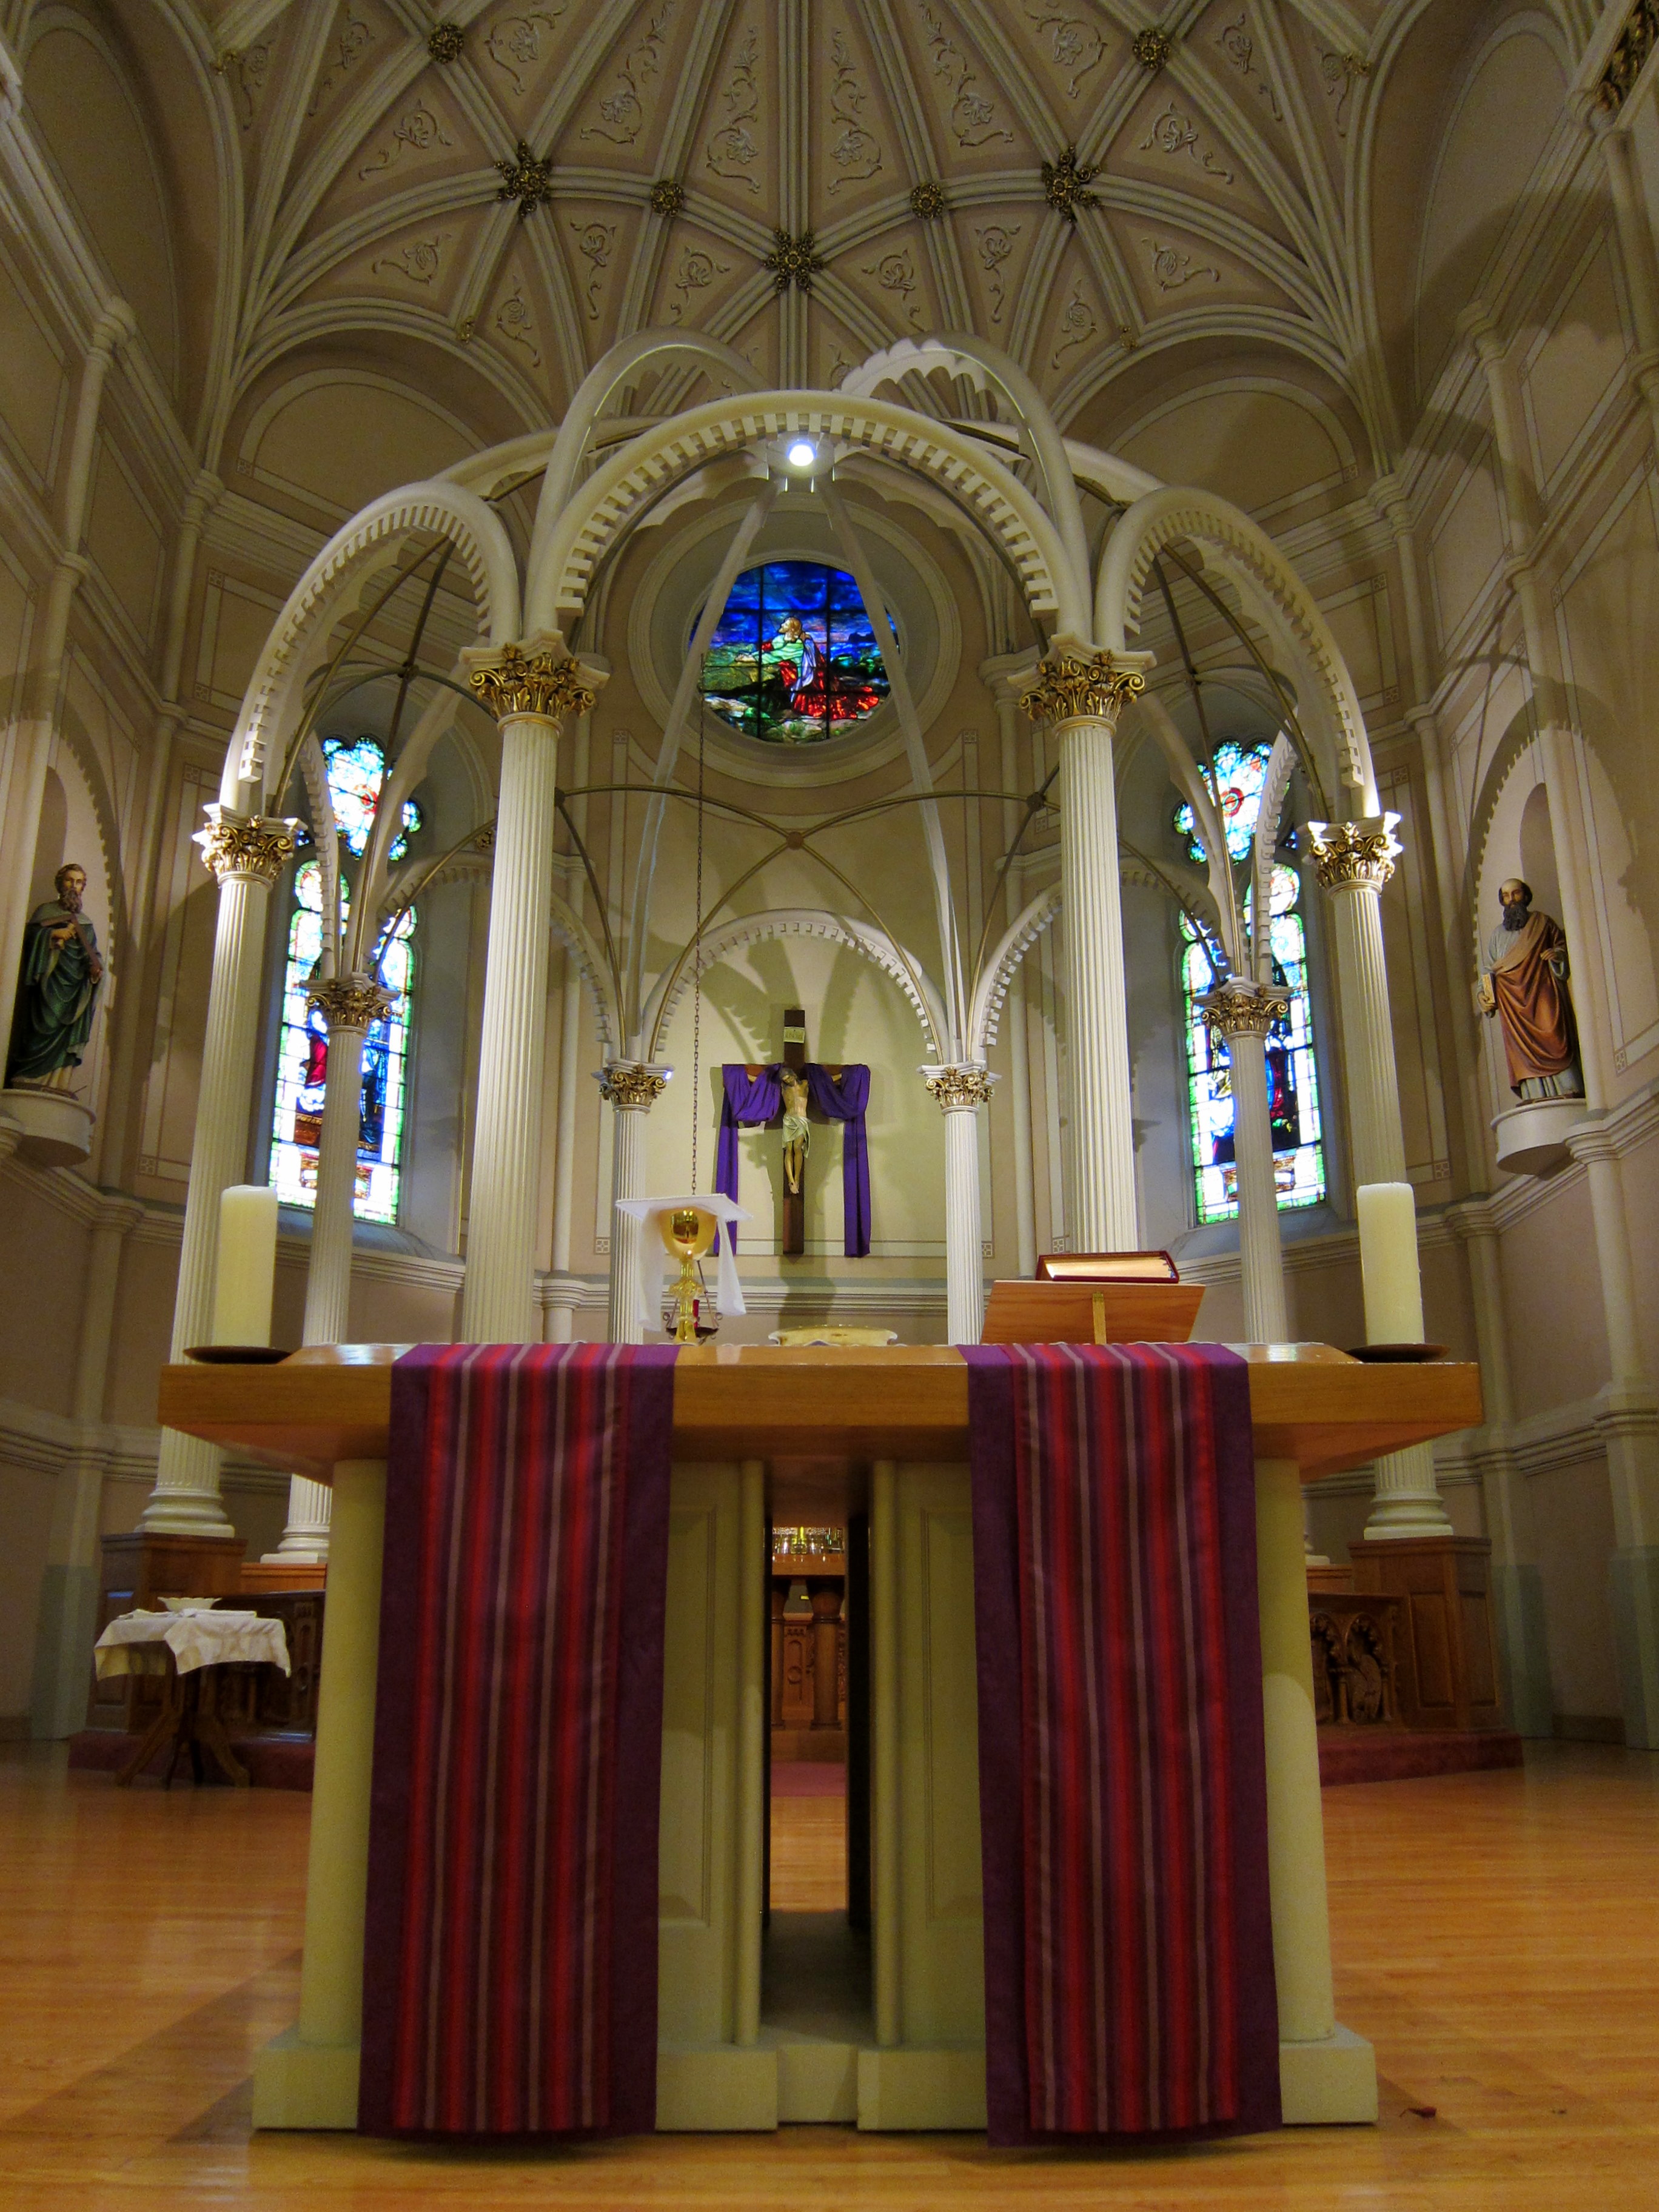 Lent Decorations for Church Sanctuary